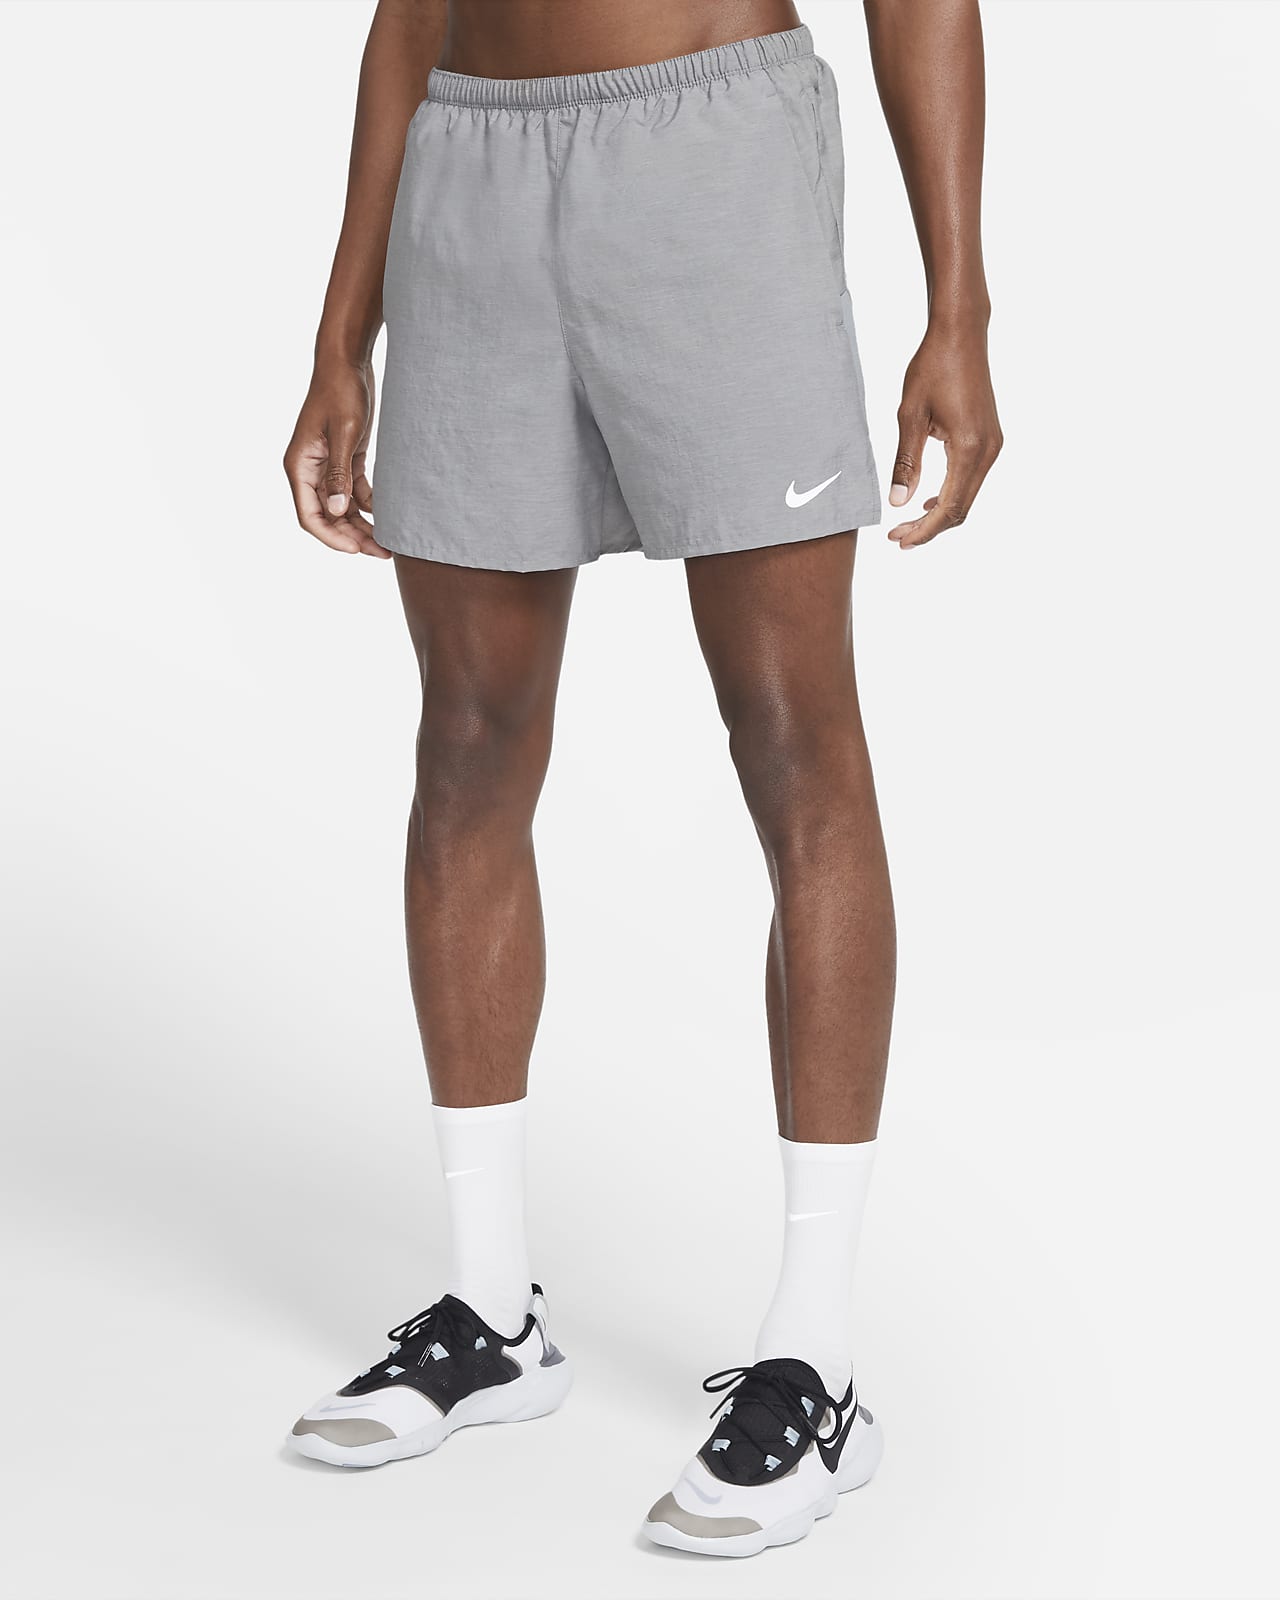 Nike Challenger Pantalons curts amb eslip integrat de running de 13 cm - Home